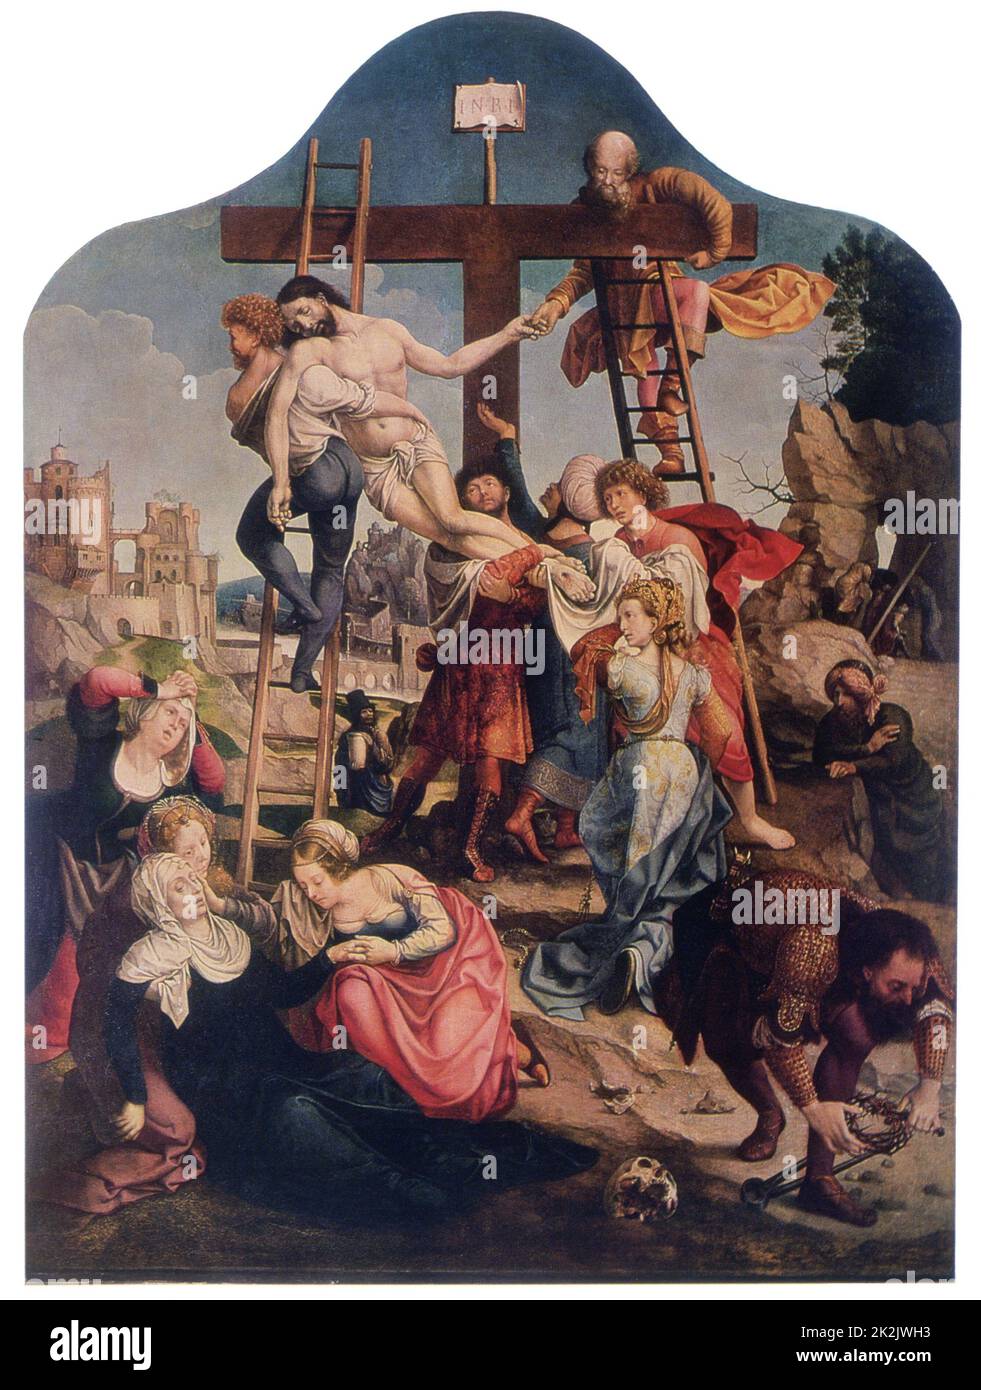 Jan Gossaert, connu sous le nom d'école hollandaise Mabuse Descent de la Croix c.1520 huile sur toile (141 x 106,5 cm) Saint-Pétersbourg, Musée de l'Ermitage Banque D'Images